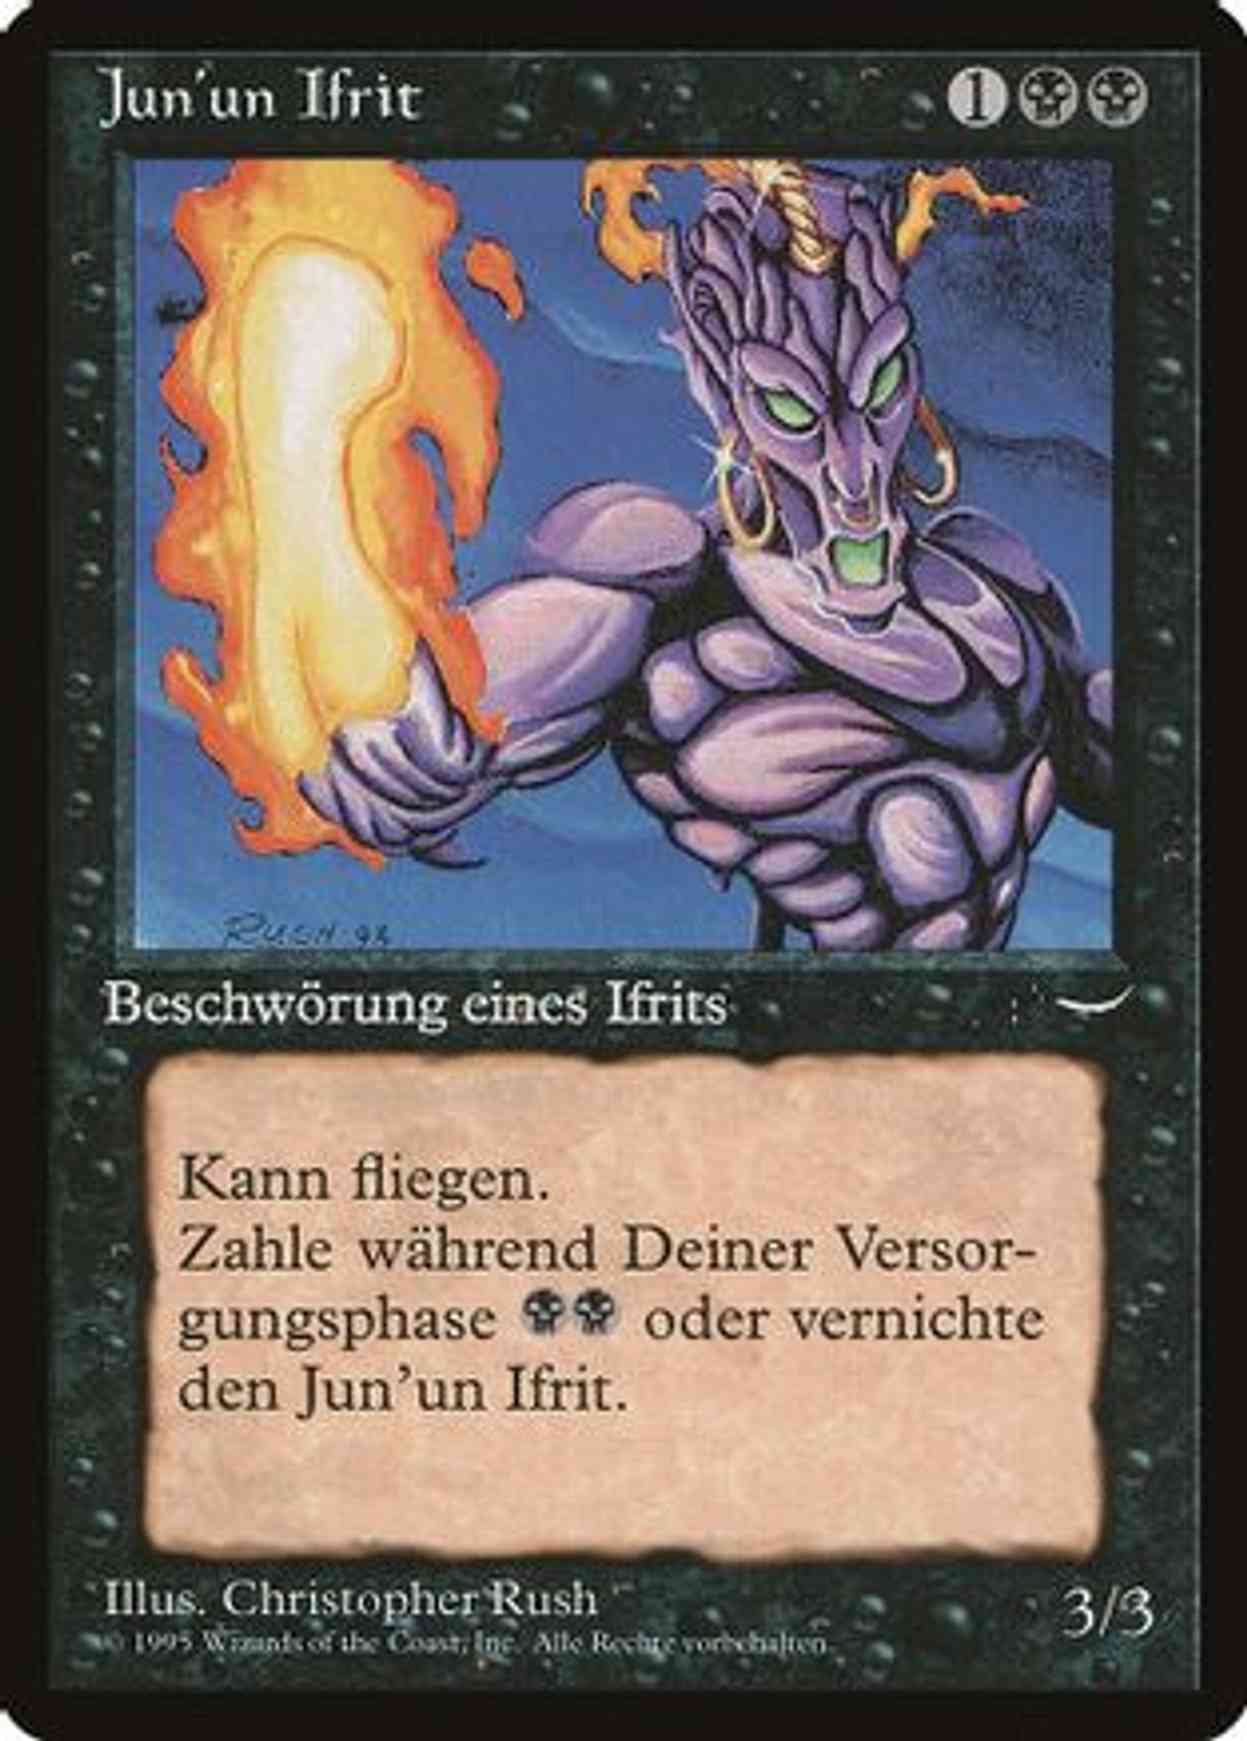 Junun Efreet (German) - "Jun'un Ifrit" magic card front